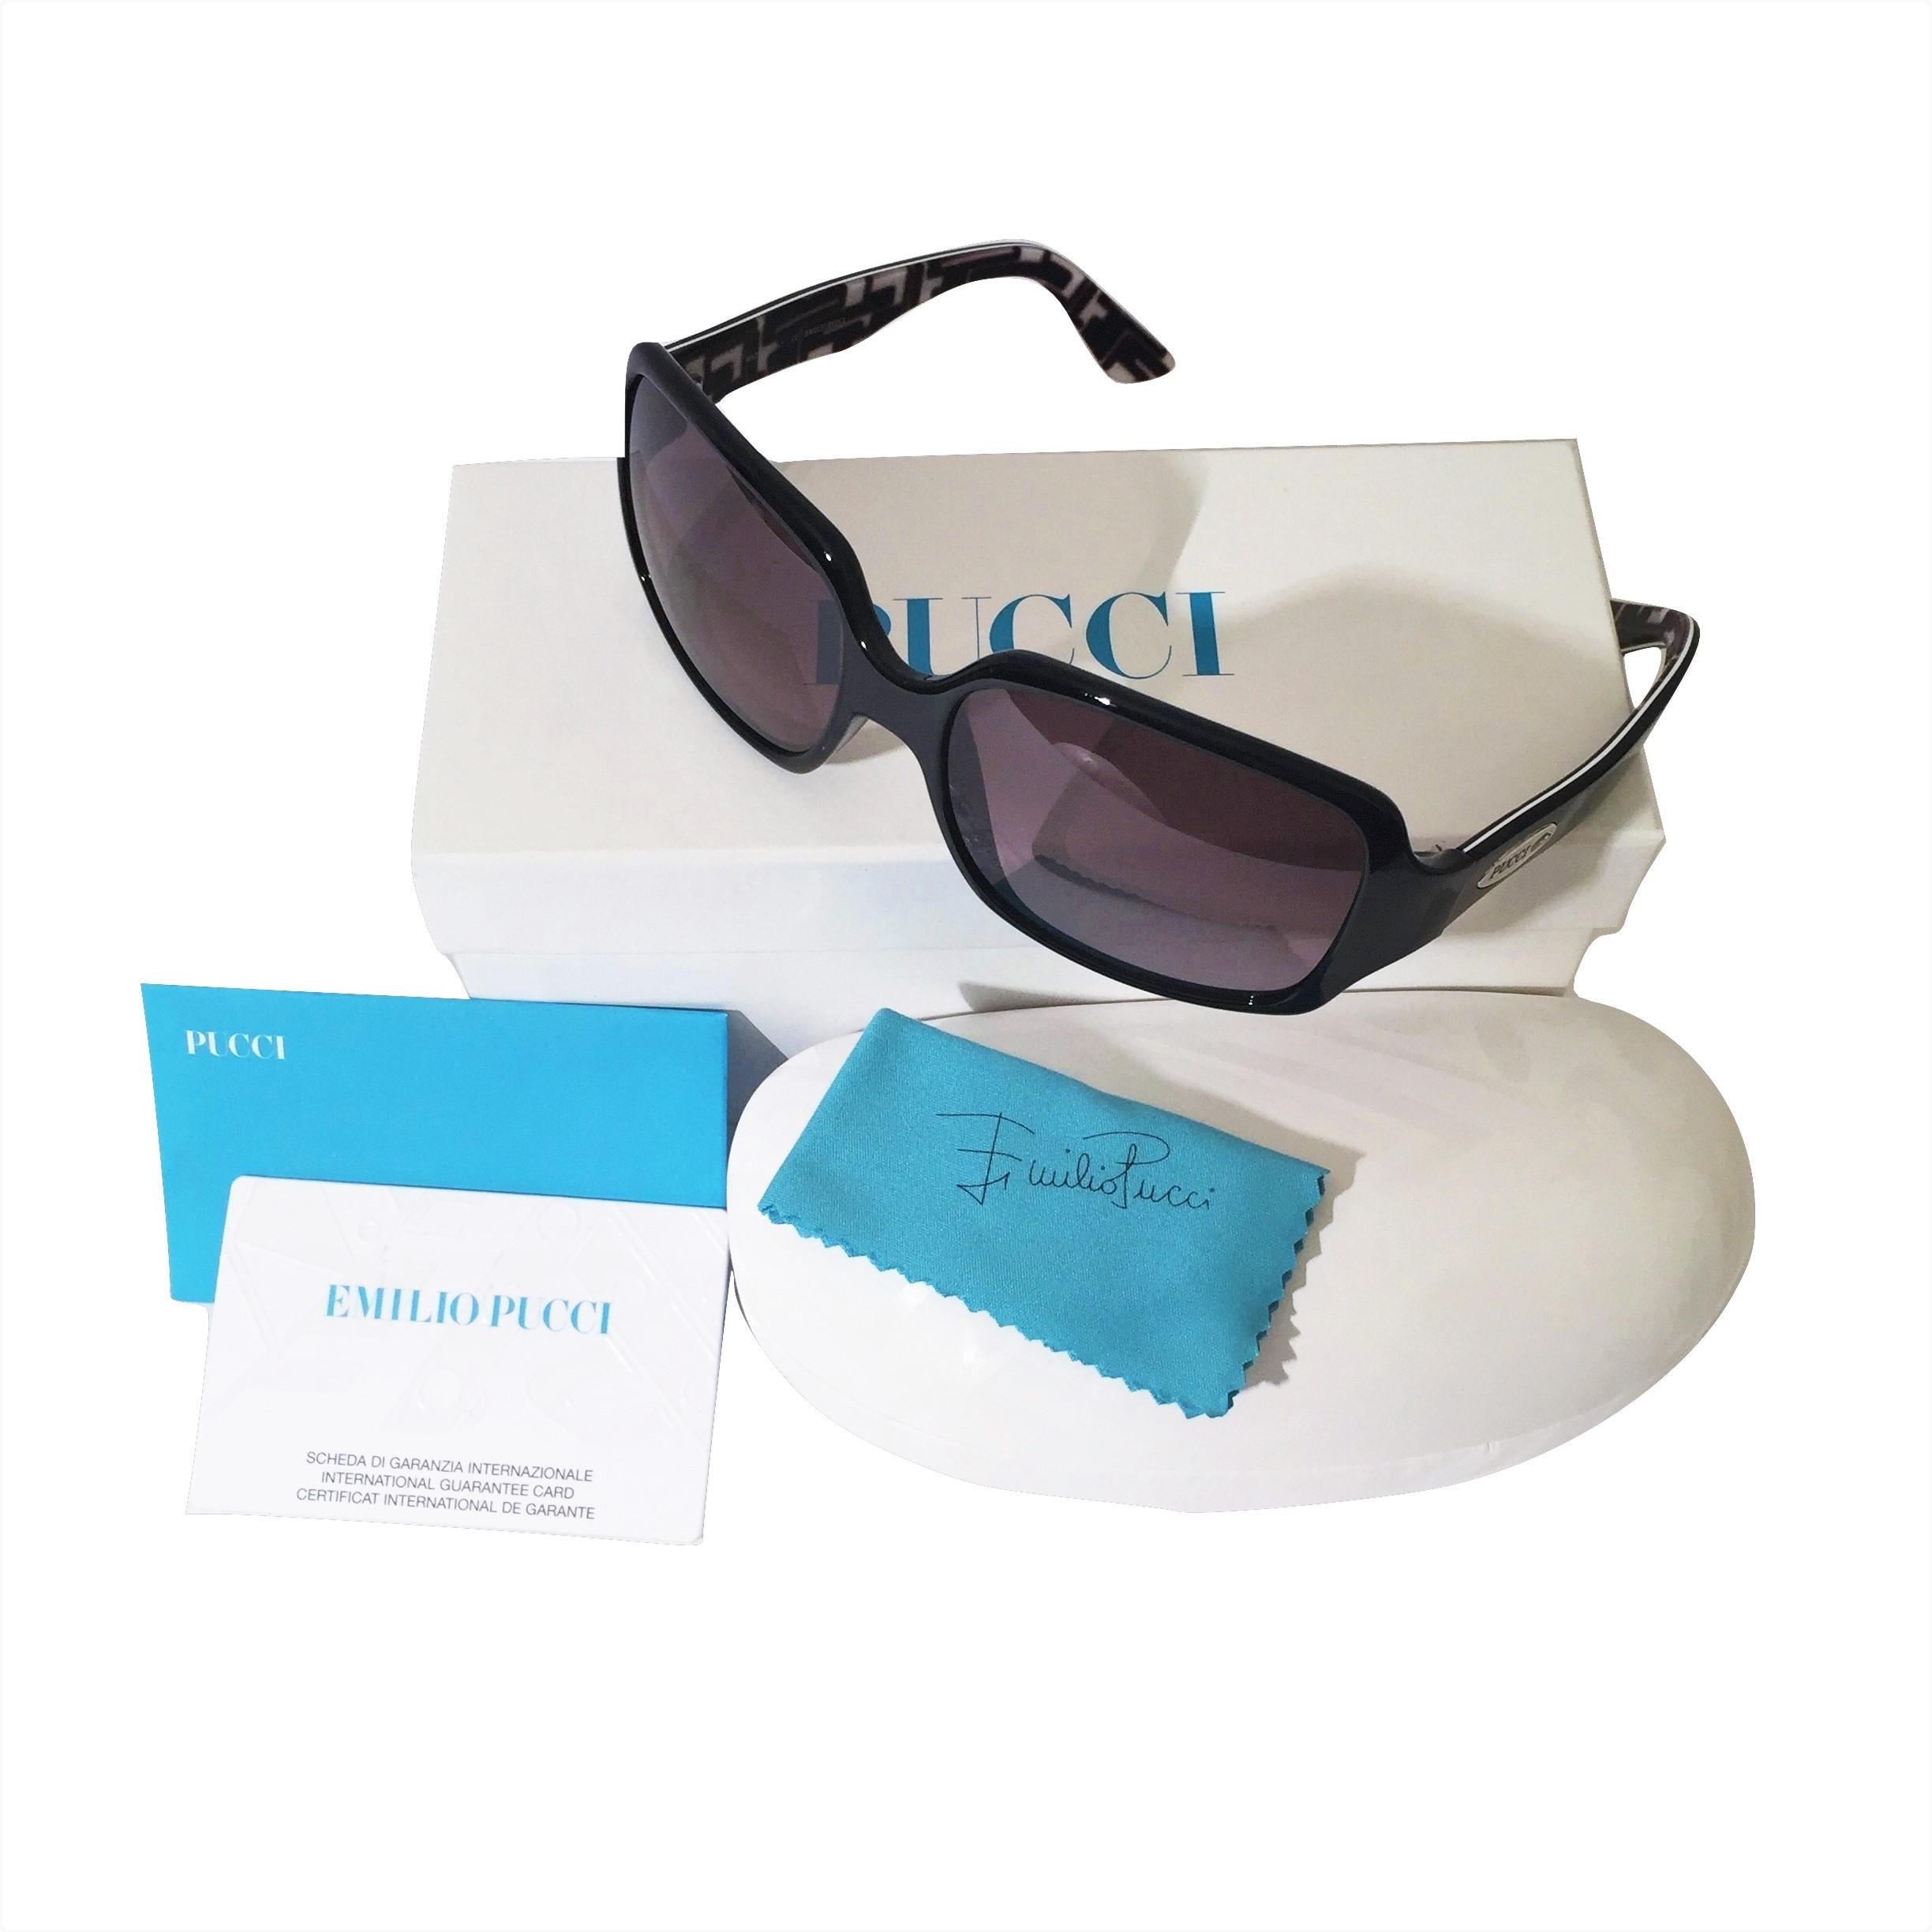 Neu Emilio Pucci Schwarze Logo-Sonnenbrille mit Etui und Schachtel 4